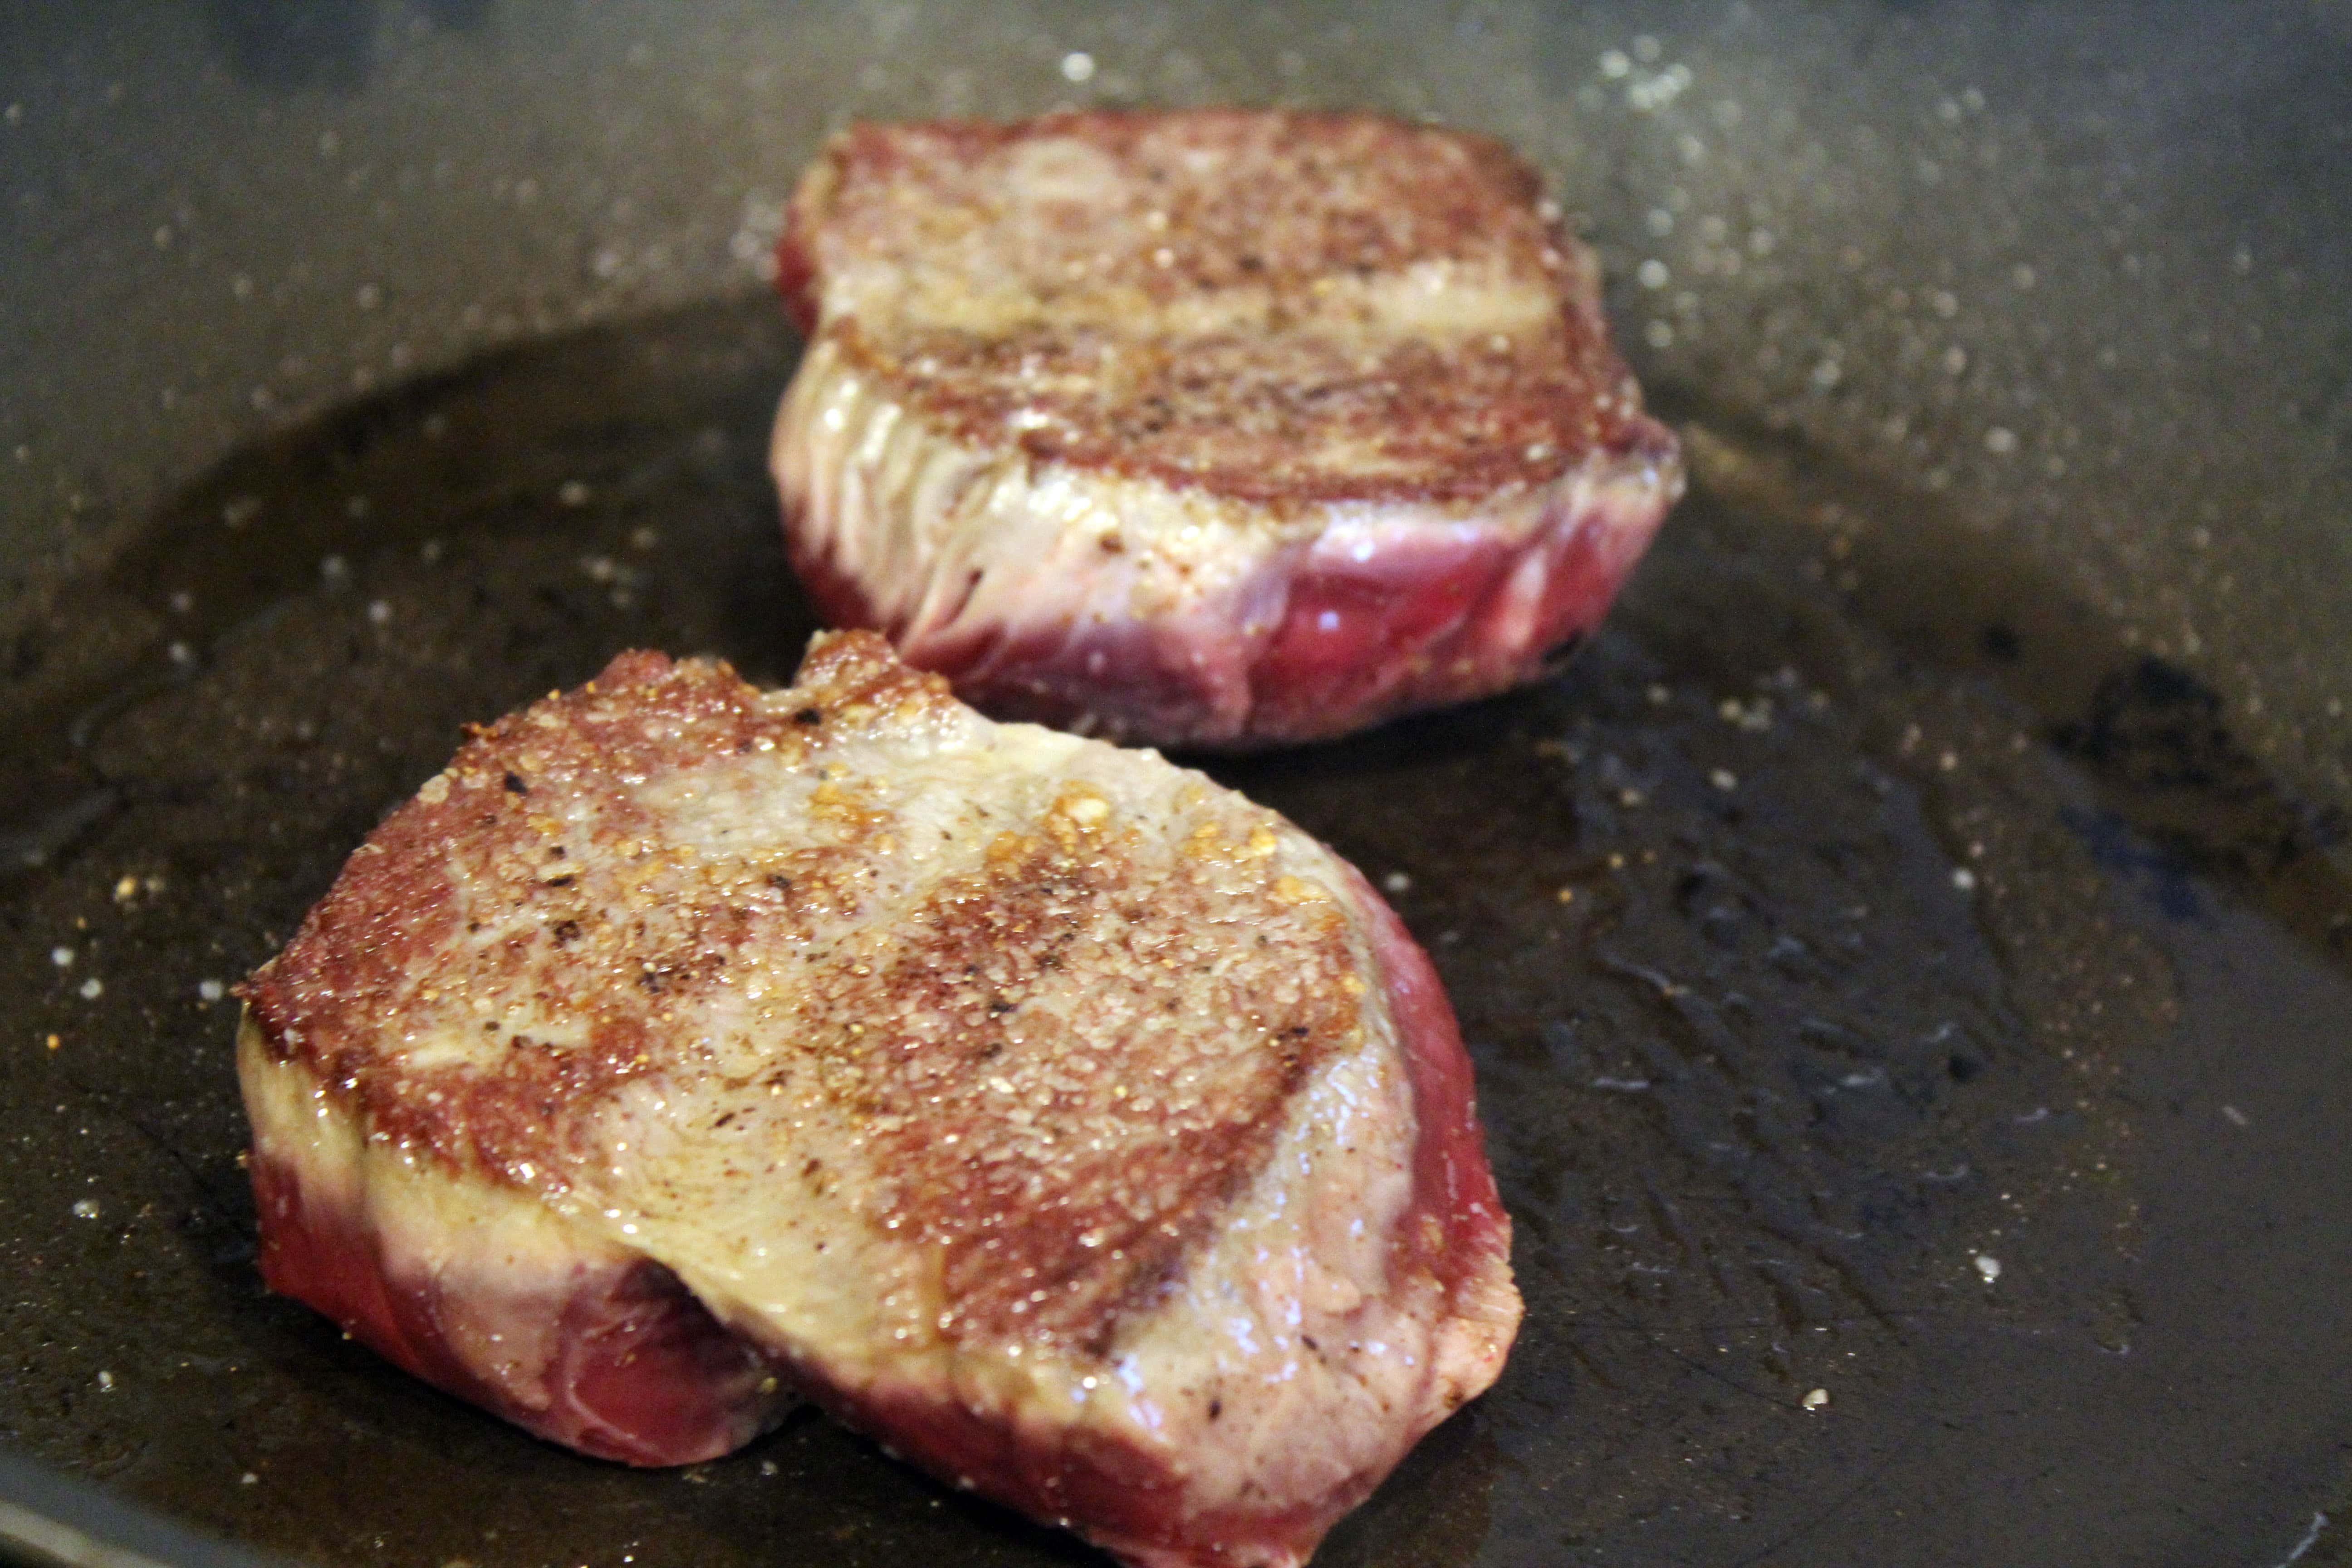 Sear second side of steak